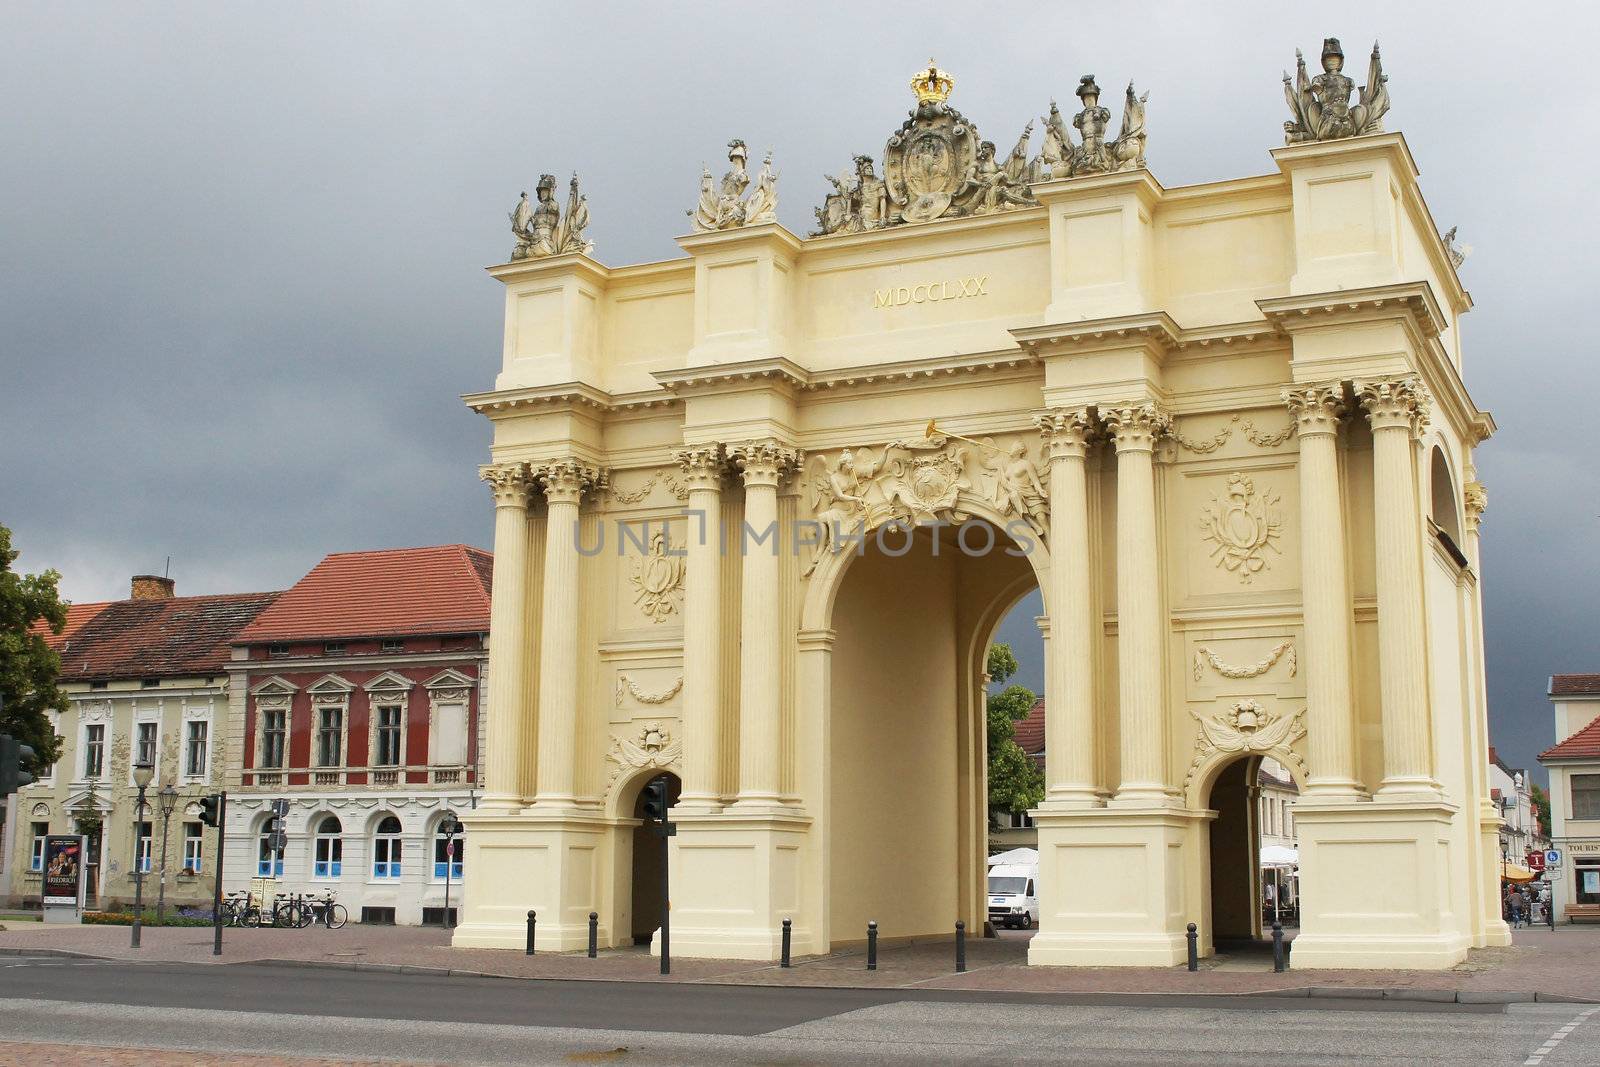 Historic gate, Potsdam, Germany by alfotokunst